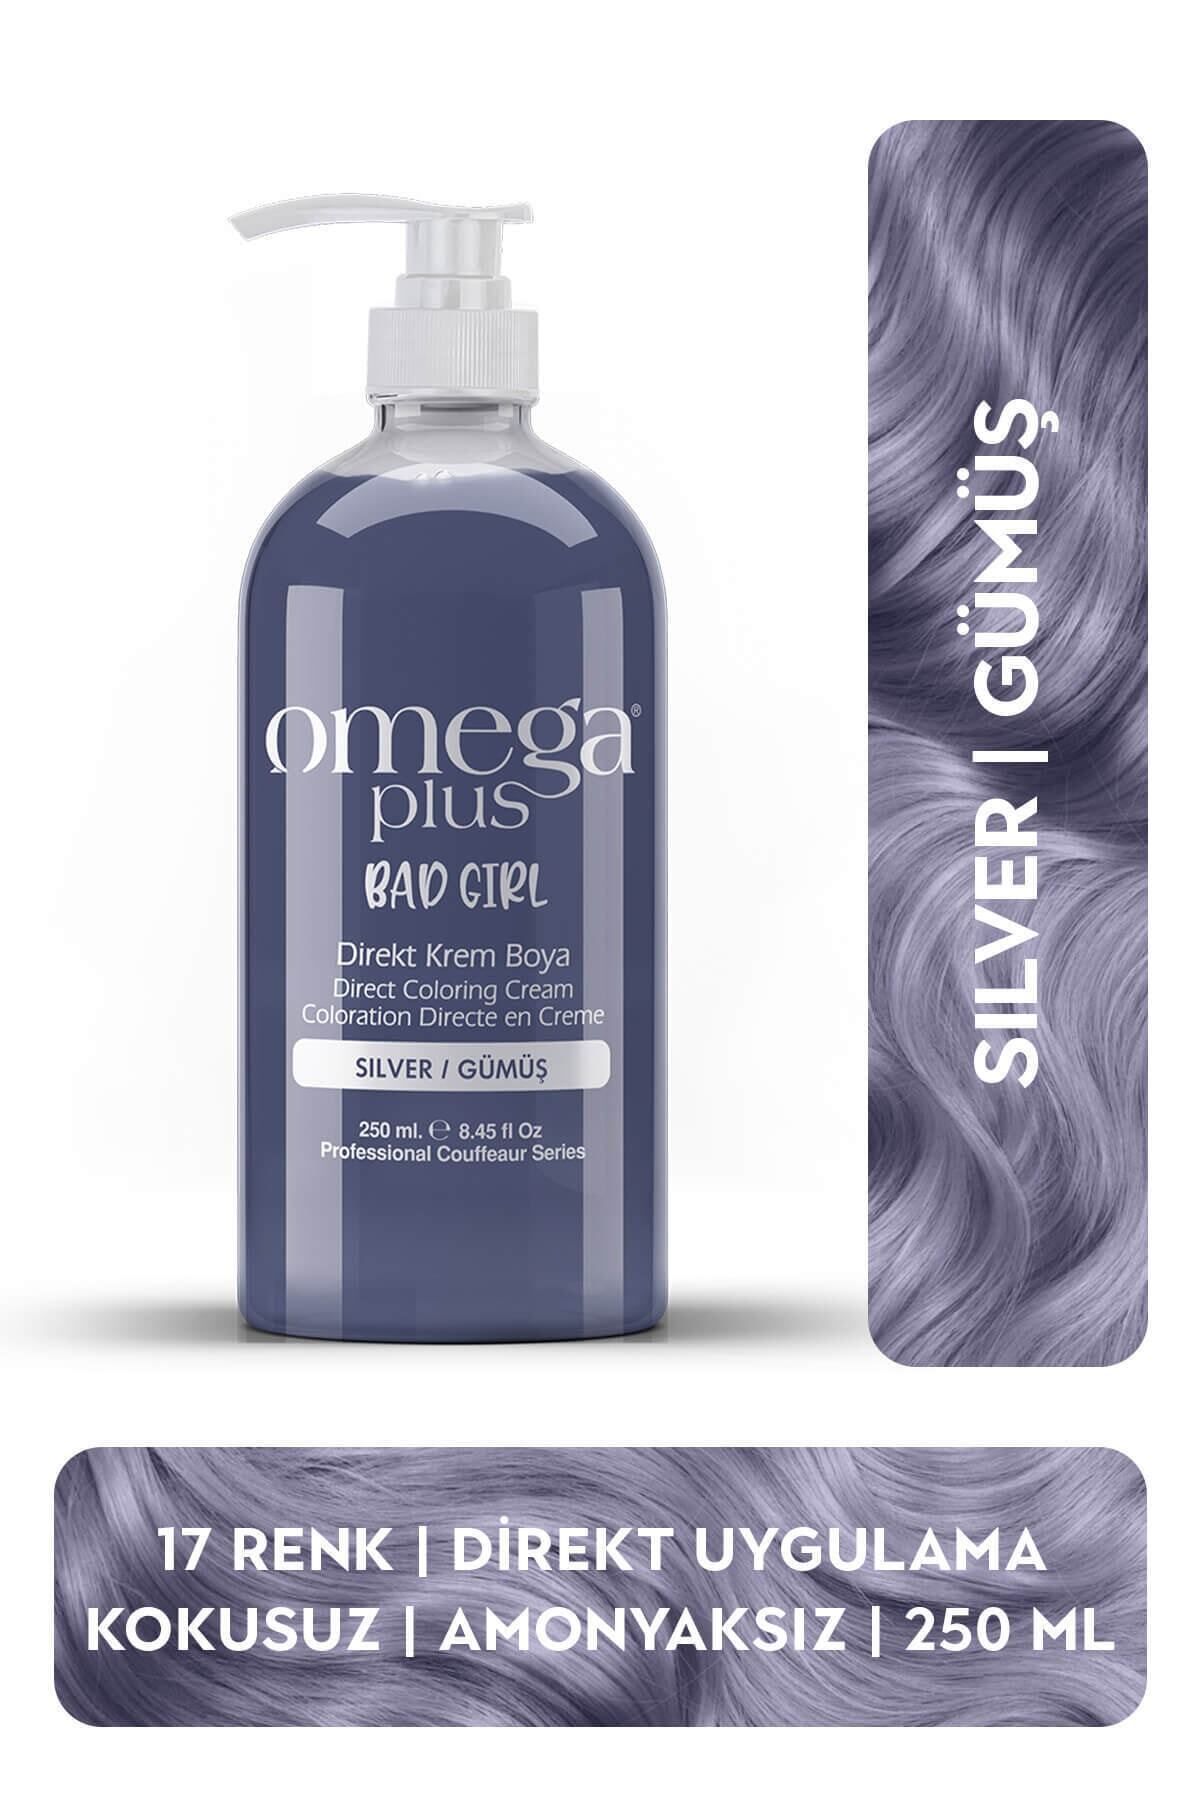 Omega Plus Bad Girl Gümüş Amonyaksız Renkli Saç Boyası 250ml